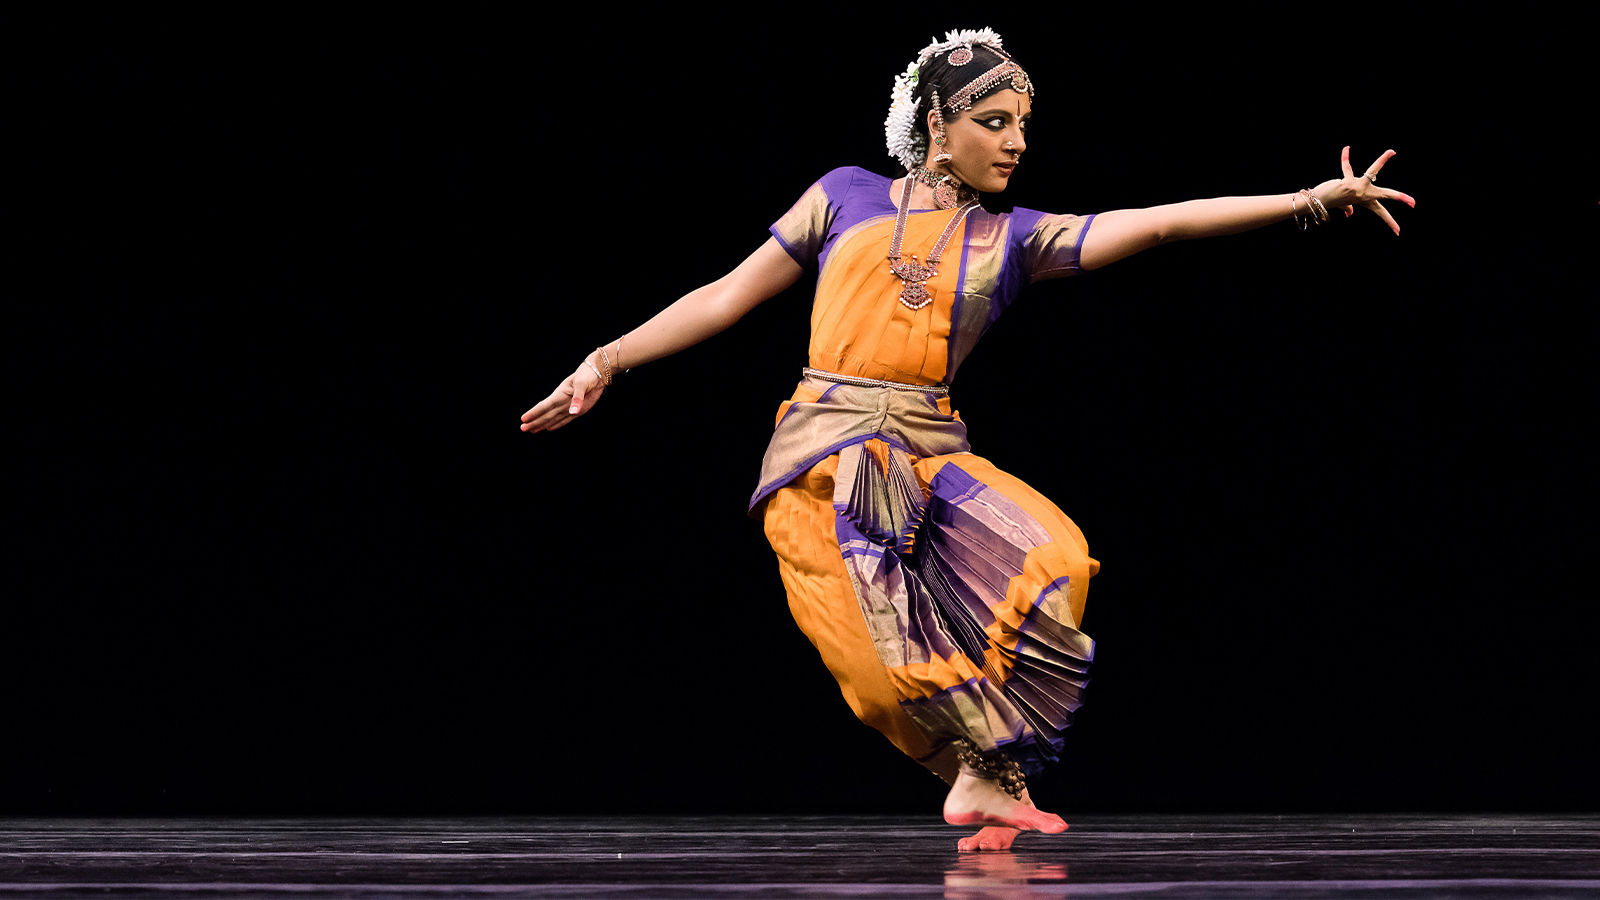 RadhaMadhava! RadhaKrishna! | Bharatanatyam poses, Dance poses, Indian  classical dance